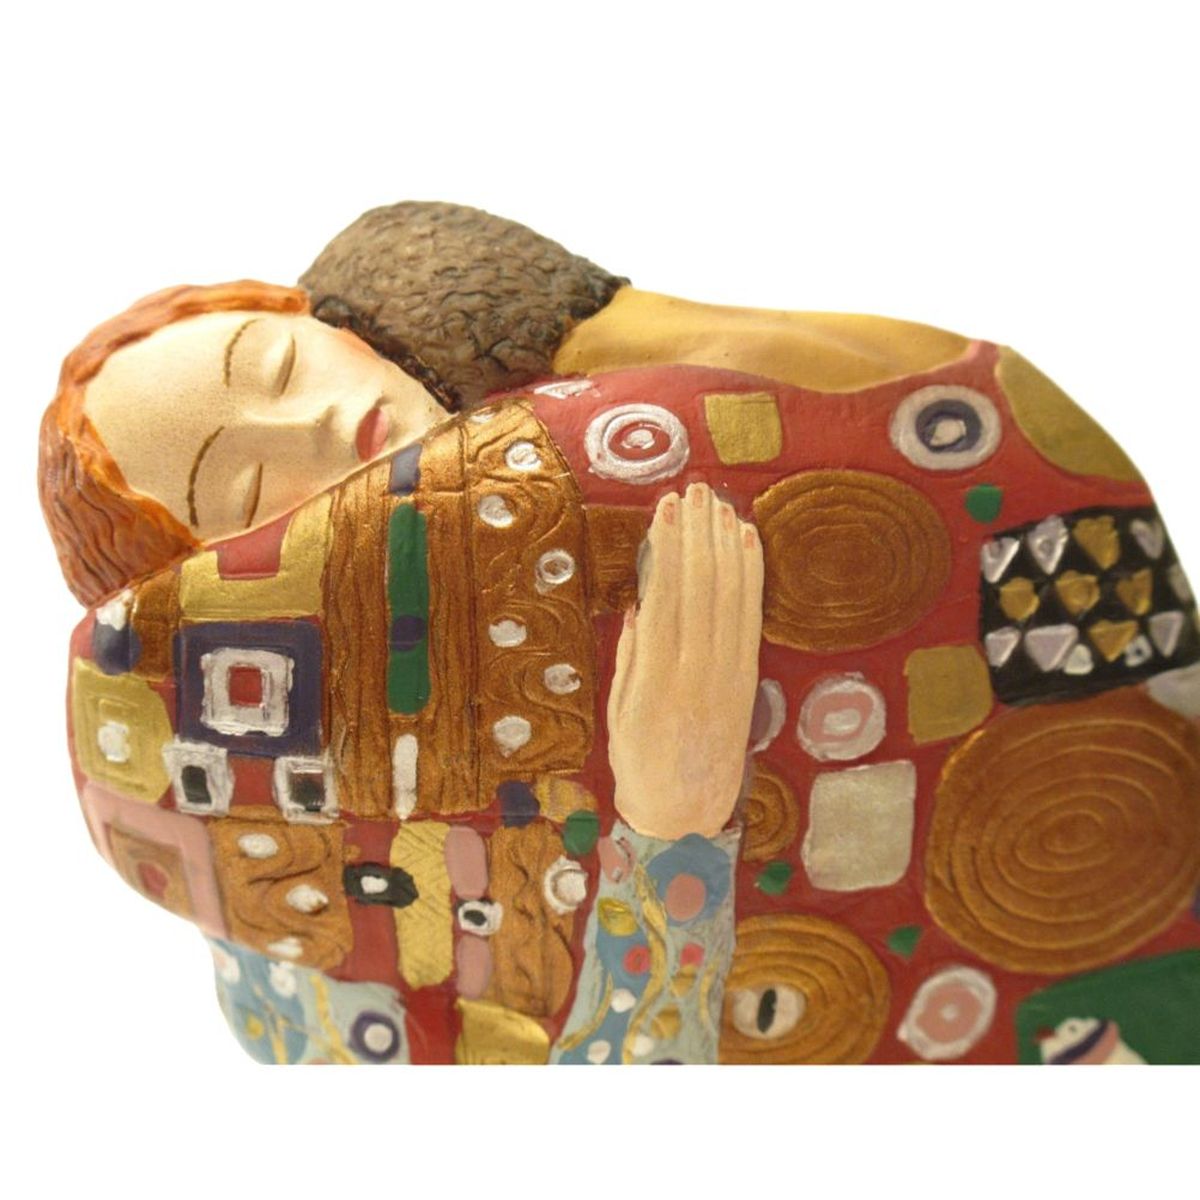 Statuette de collection L'exaucement de Klimt